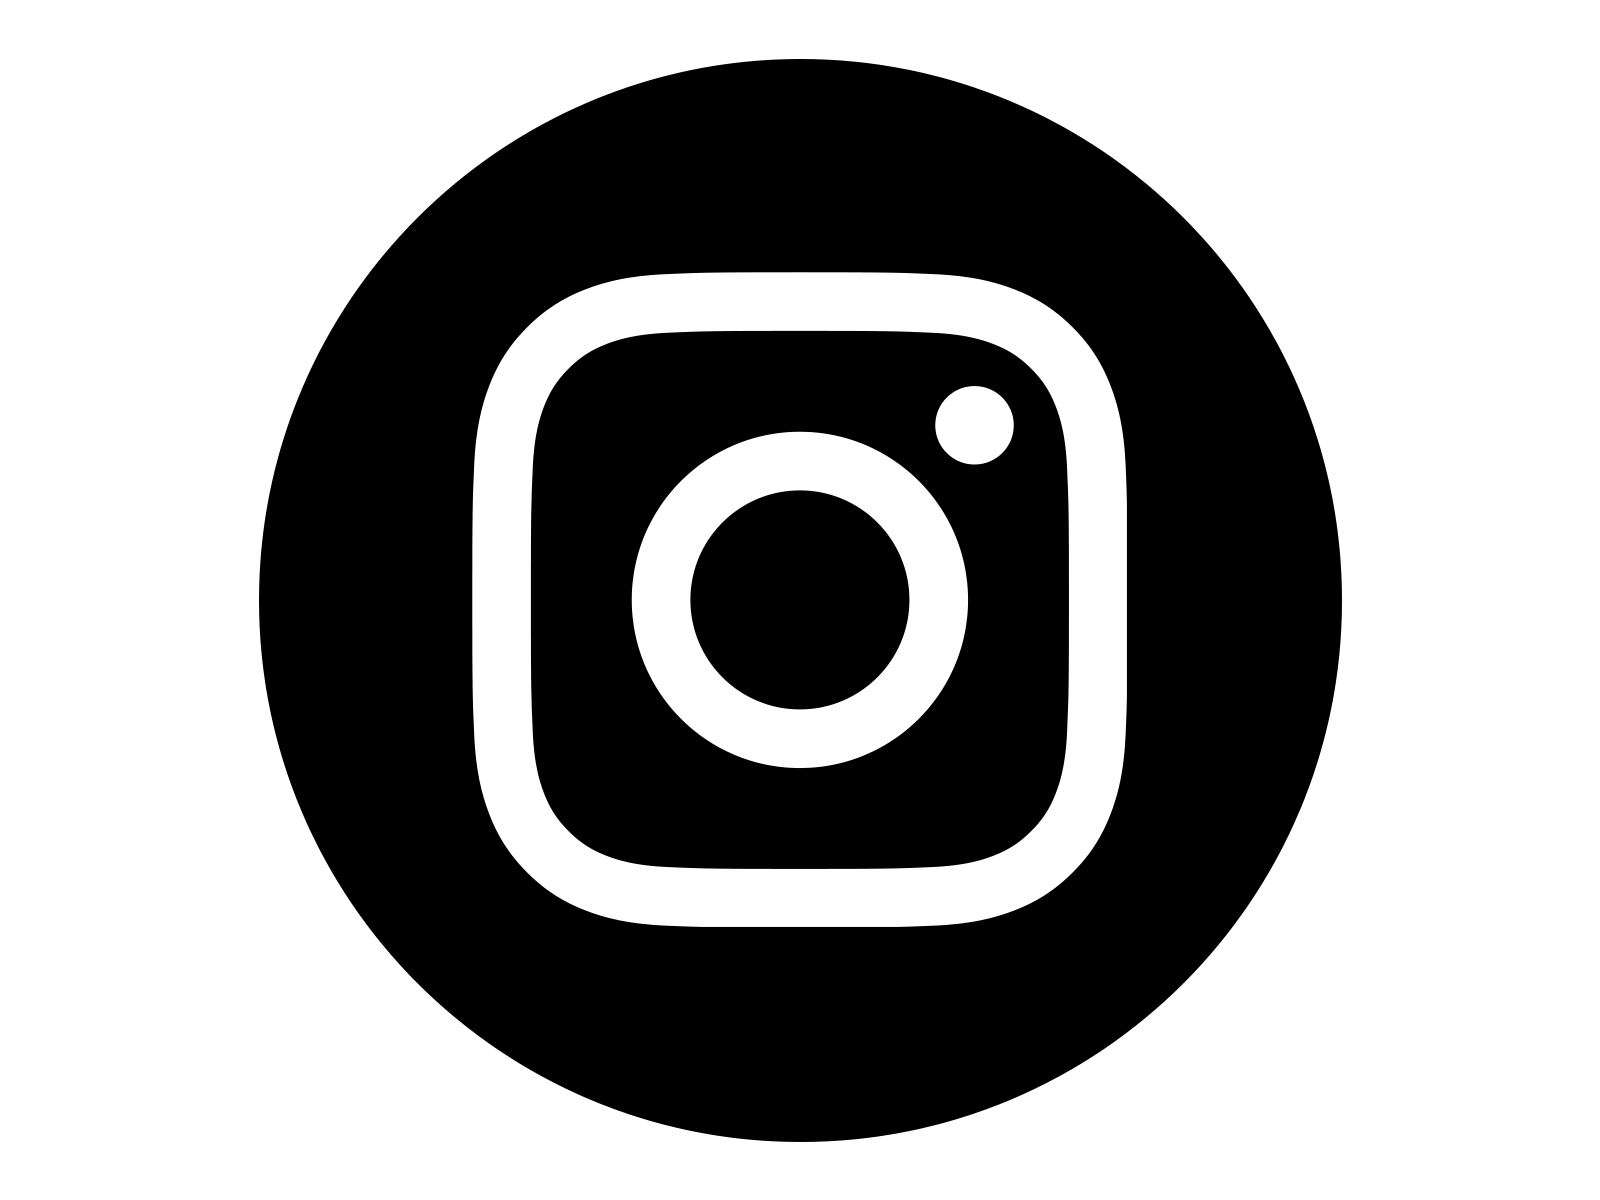 The logo for Instagram